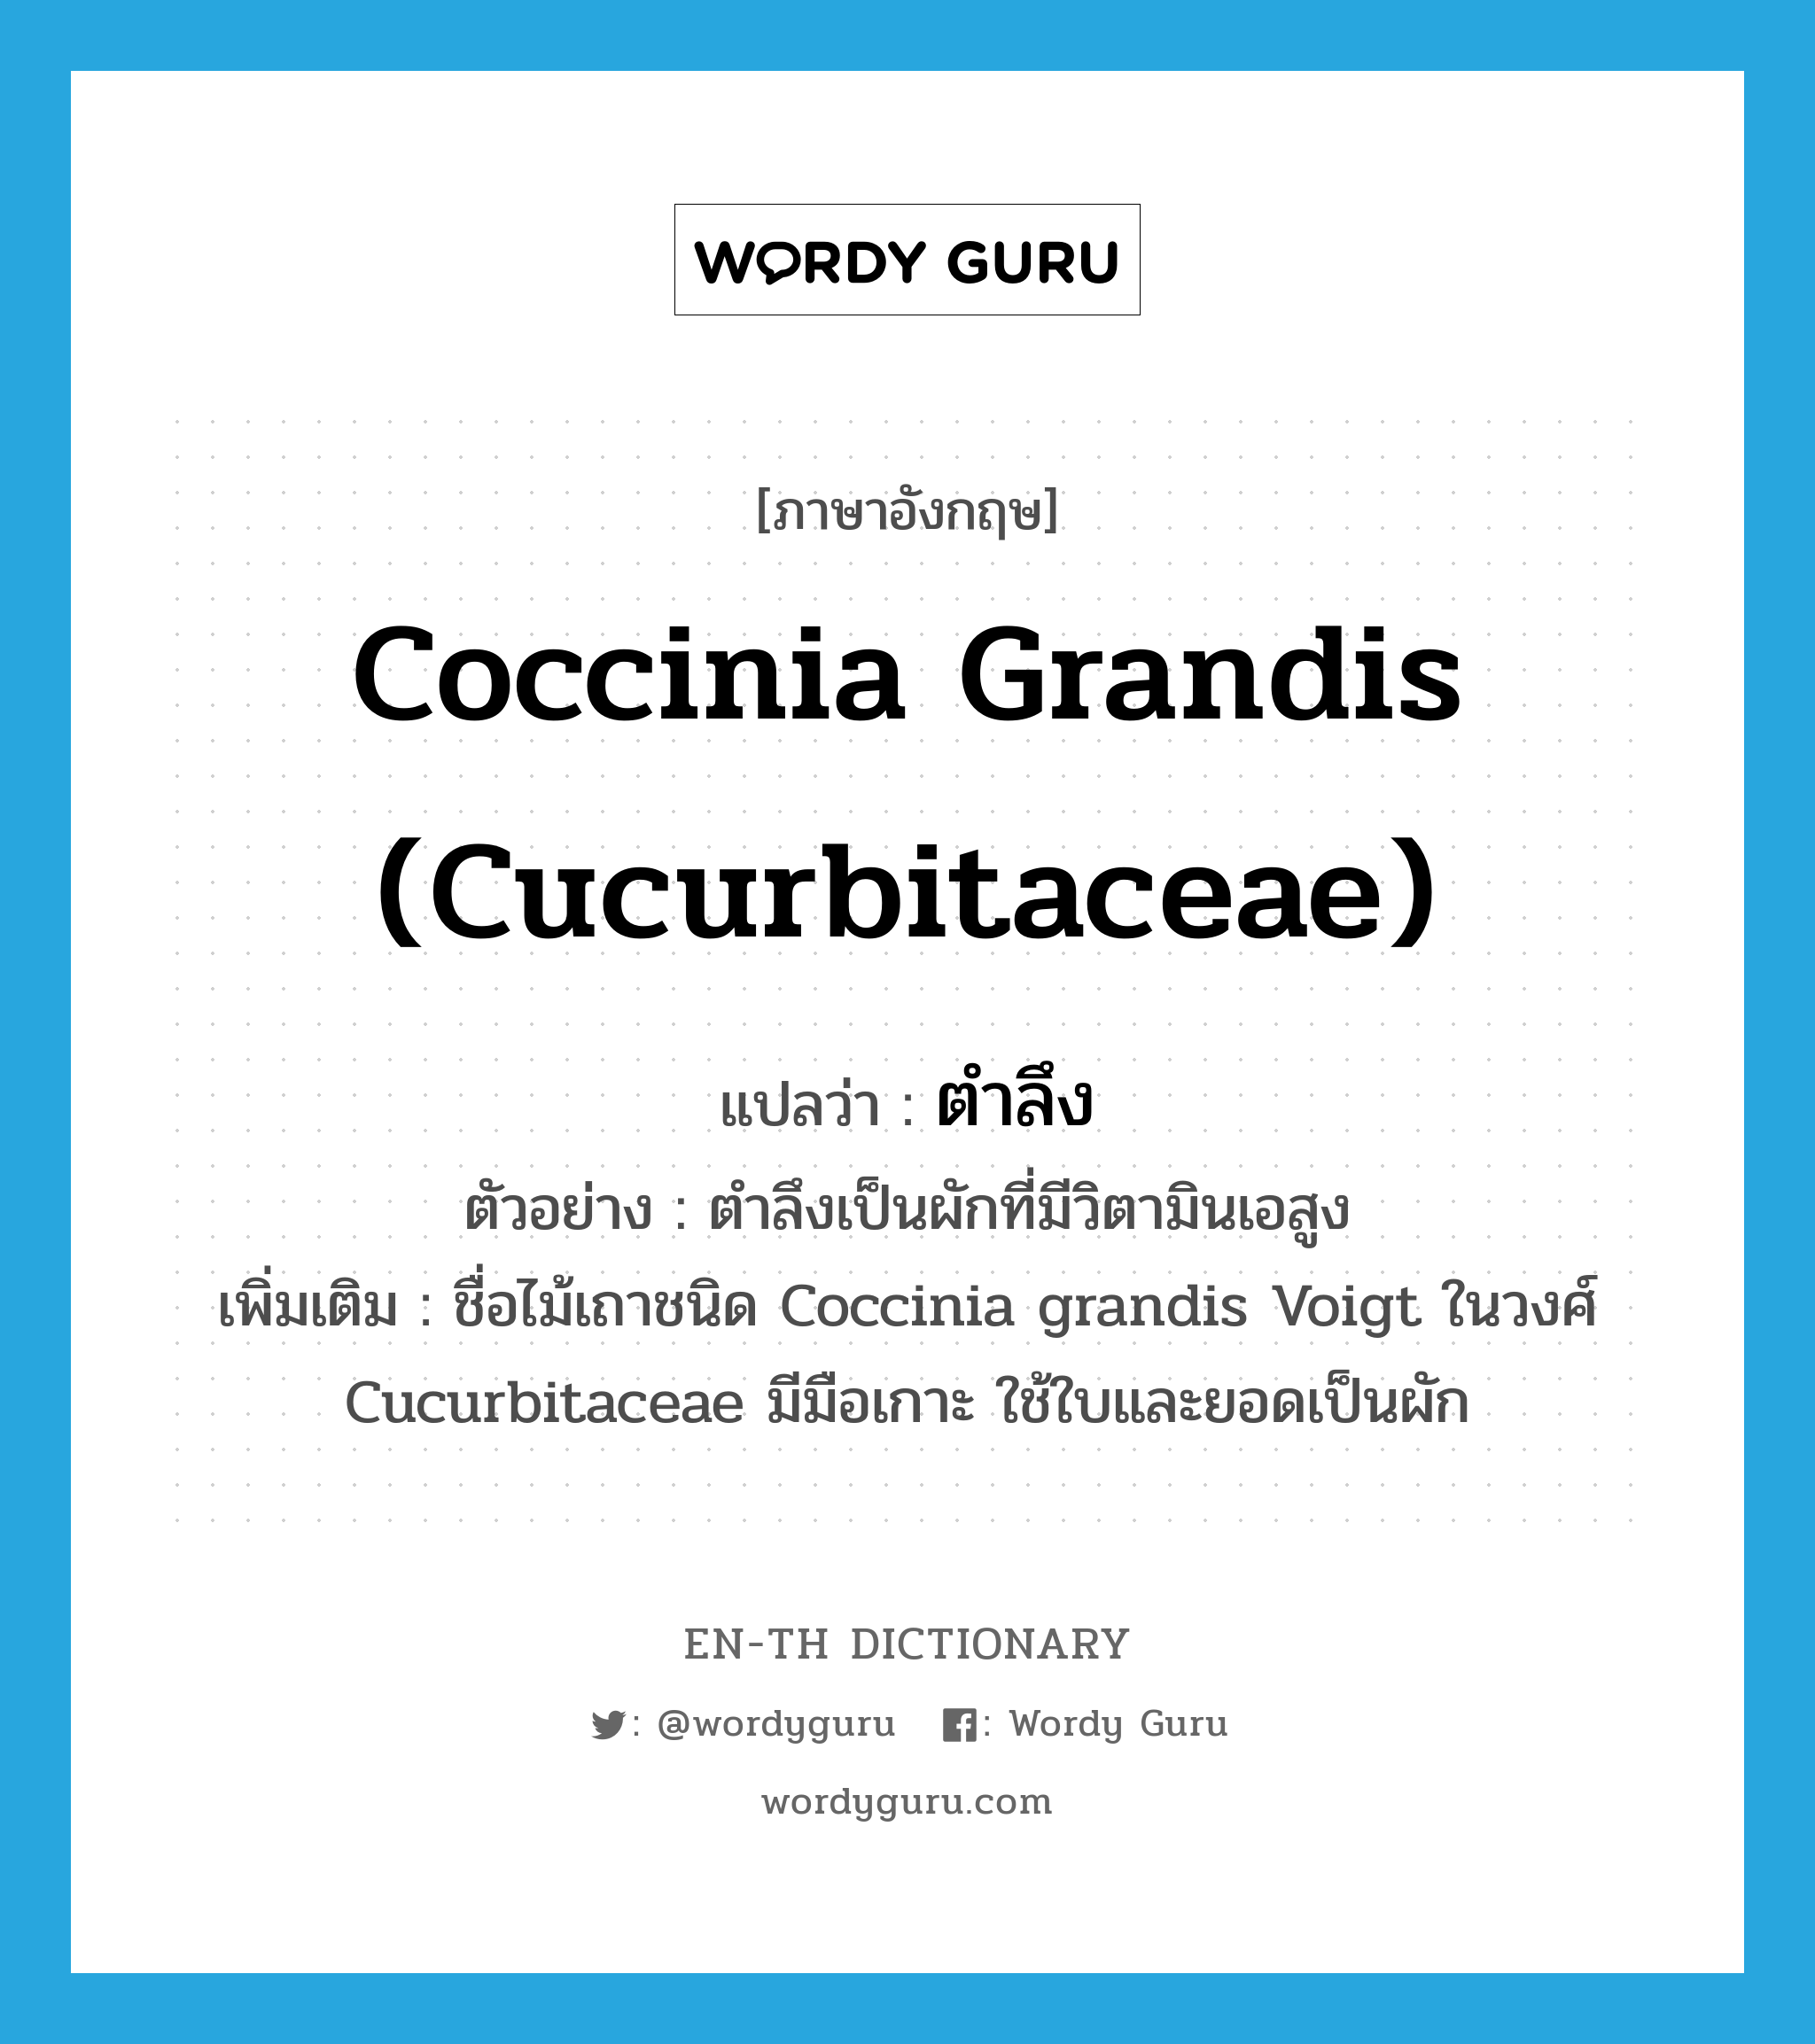 Coccinia grandis (Cucurbitaceae) แปลว่า?, คำศัพท์ภาษาอังกฤษ Coccinia grandis (Cucurbitaceae) แปลว่า ตำลึง ประเภท N ตัวอย่าง ตำลึงเป็นผักที่มีวิตามินเอสูง เพิ่มเติม ชื่อไม้เถาชนิด Coccinia grandis Voigt ในวงศ์ Cucurbitaceae มีมือเกาะ ใช้ใบและยอดเป็นผัก หมวด N